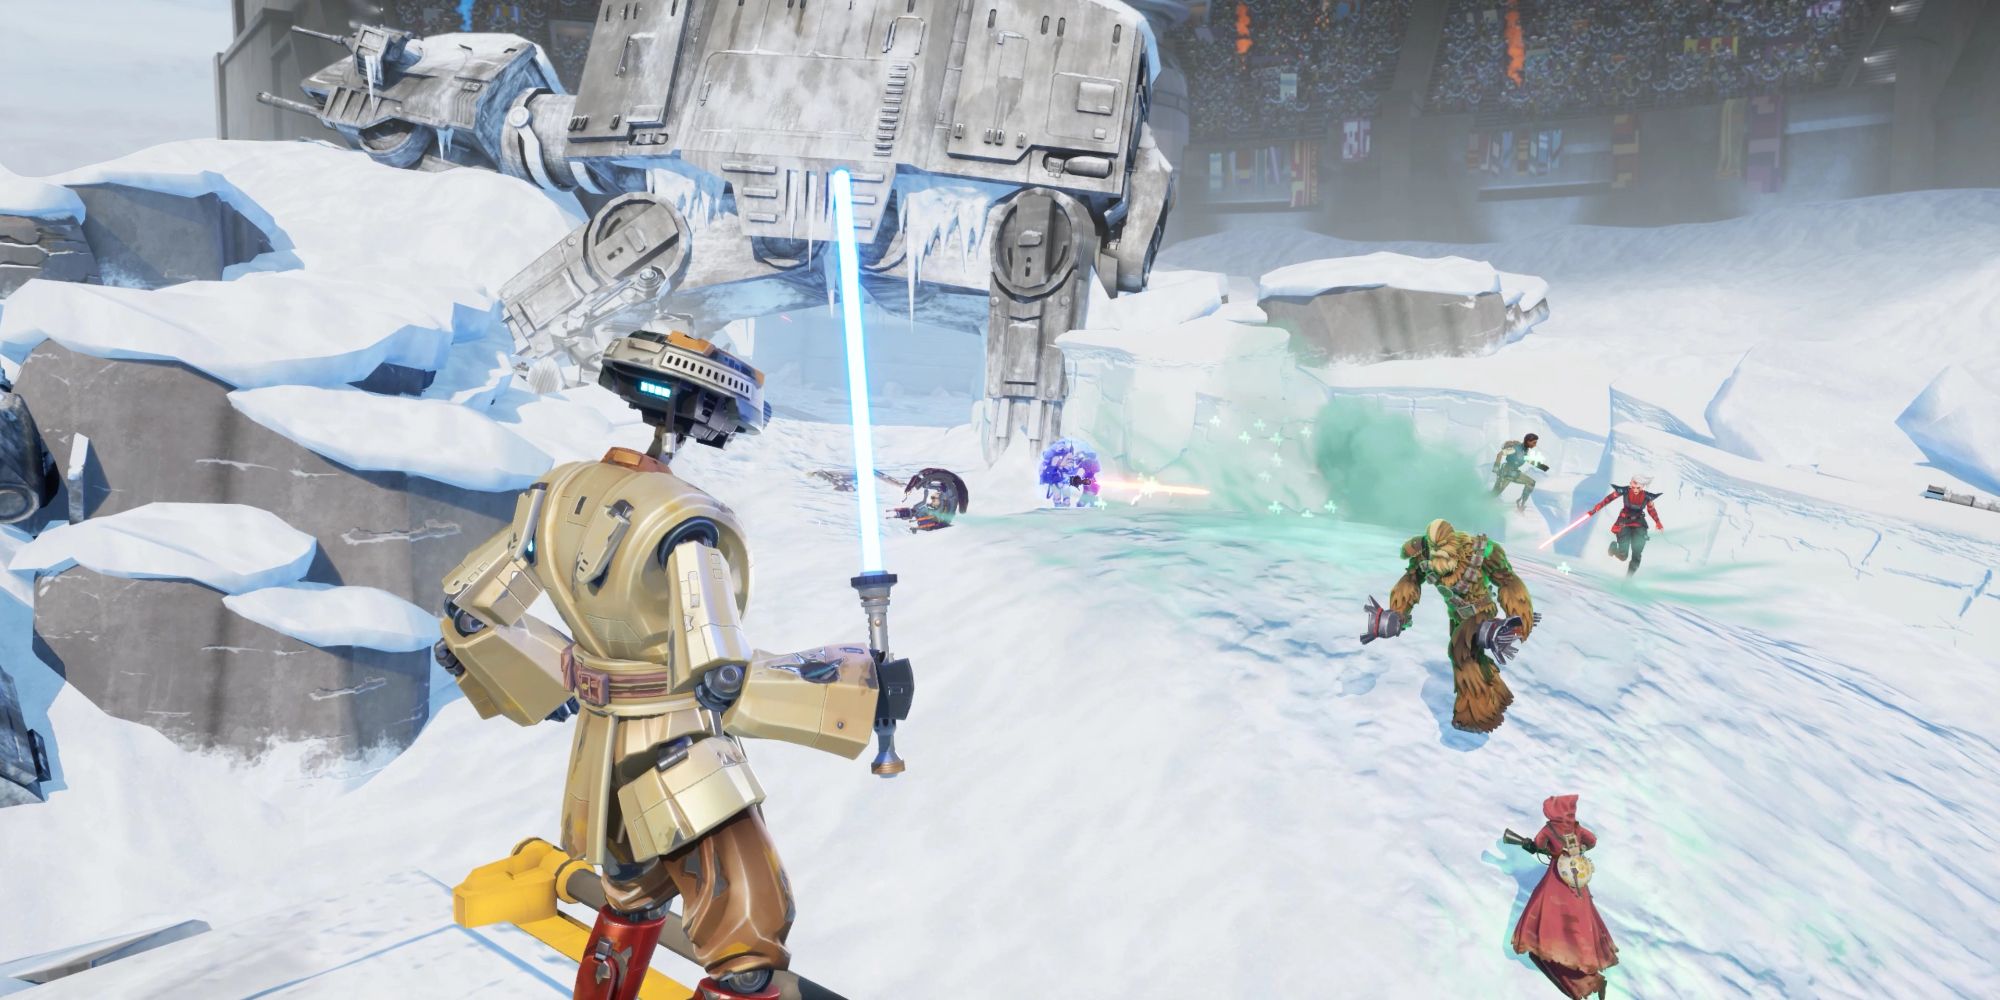 Cuplikan pertempuran di Pemburu Star Wars, dengan karakter droid memegang lightsaber melihat jarak dekat di lingkungan yang menyerupai Hoth.